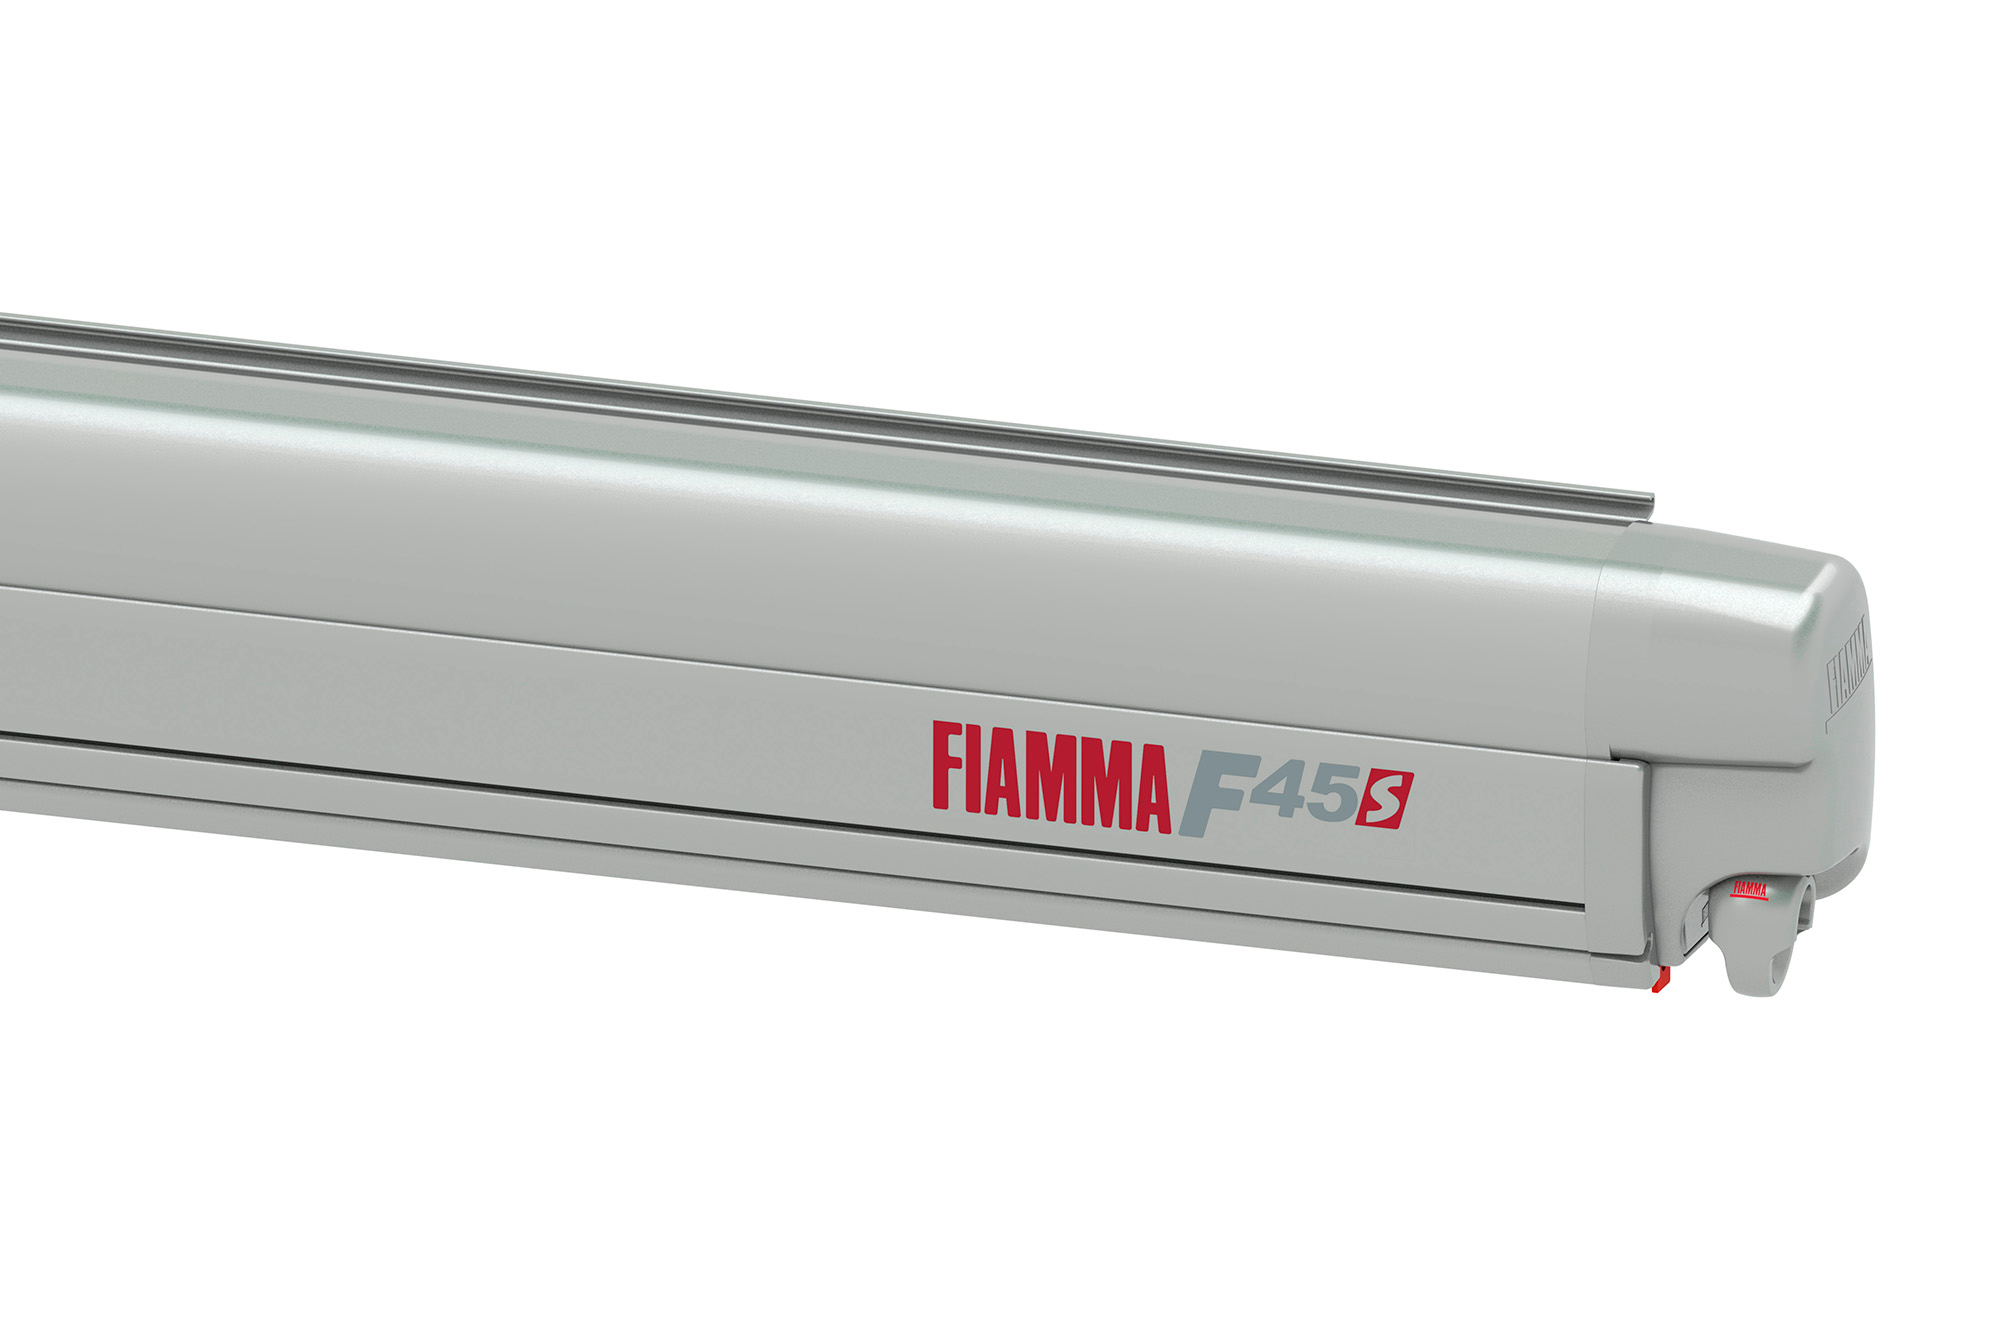 Fiamma F45s 260 Markise für Rechtslenker VW T5/T6 Multivan/Transporter Tuchfarbe Royal Grey 260 cm Gehäusefarbe Titanium